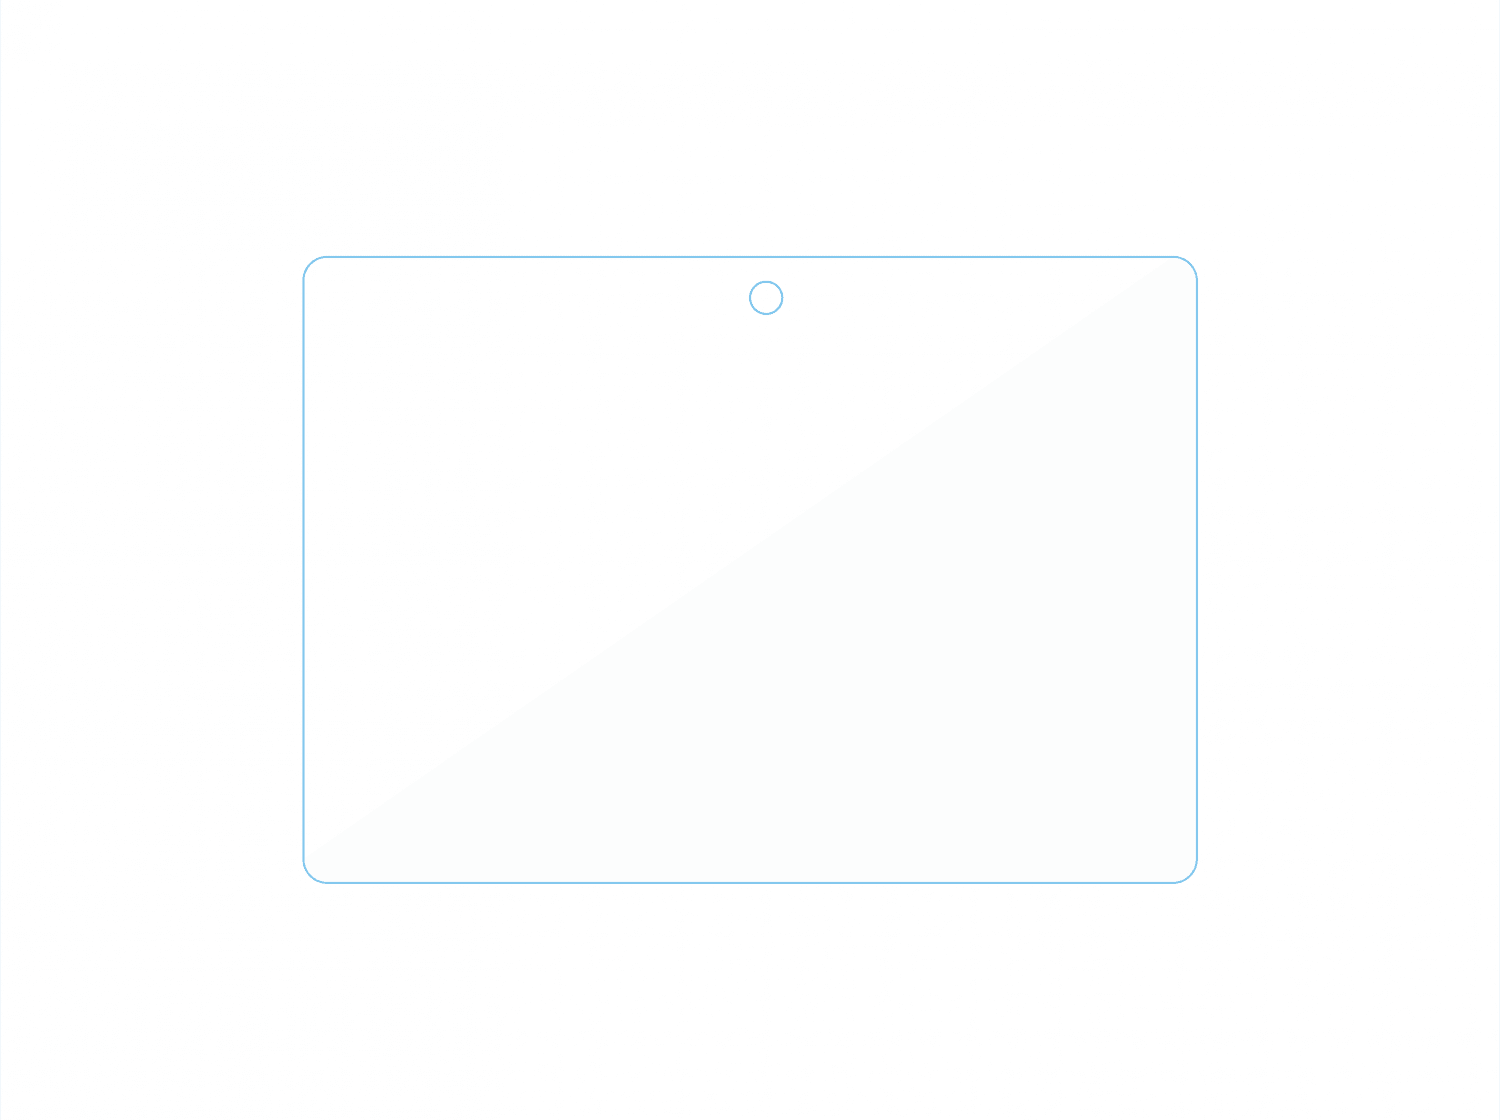 لاصقة شاشة حماية ماك بوك 14 برو شفافة جرين Green Tempered Glass Screen Protector for Macbook 14 Pro 2021 - cG9zdDoxMzcwNDc5